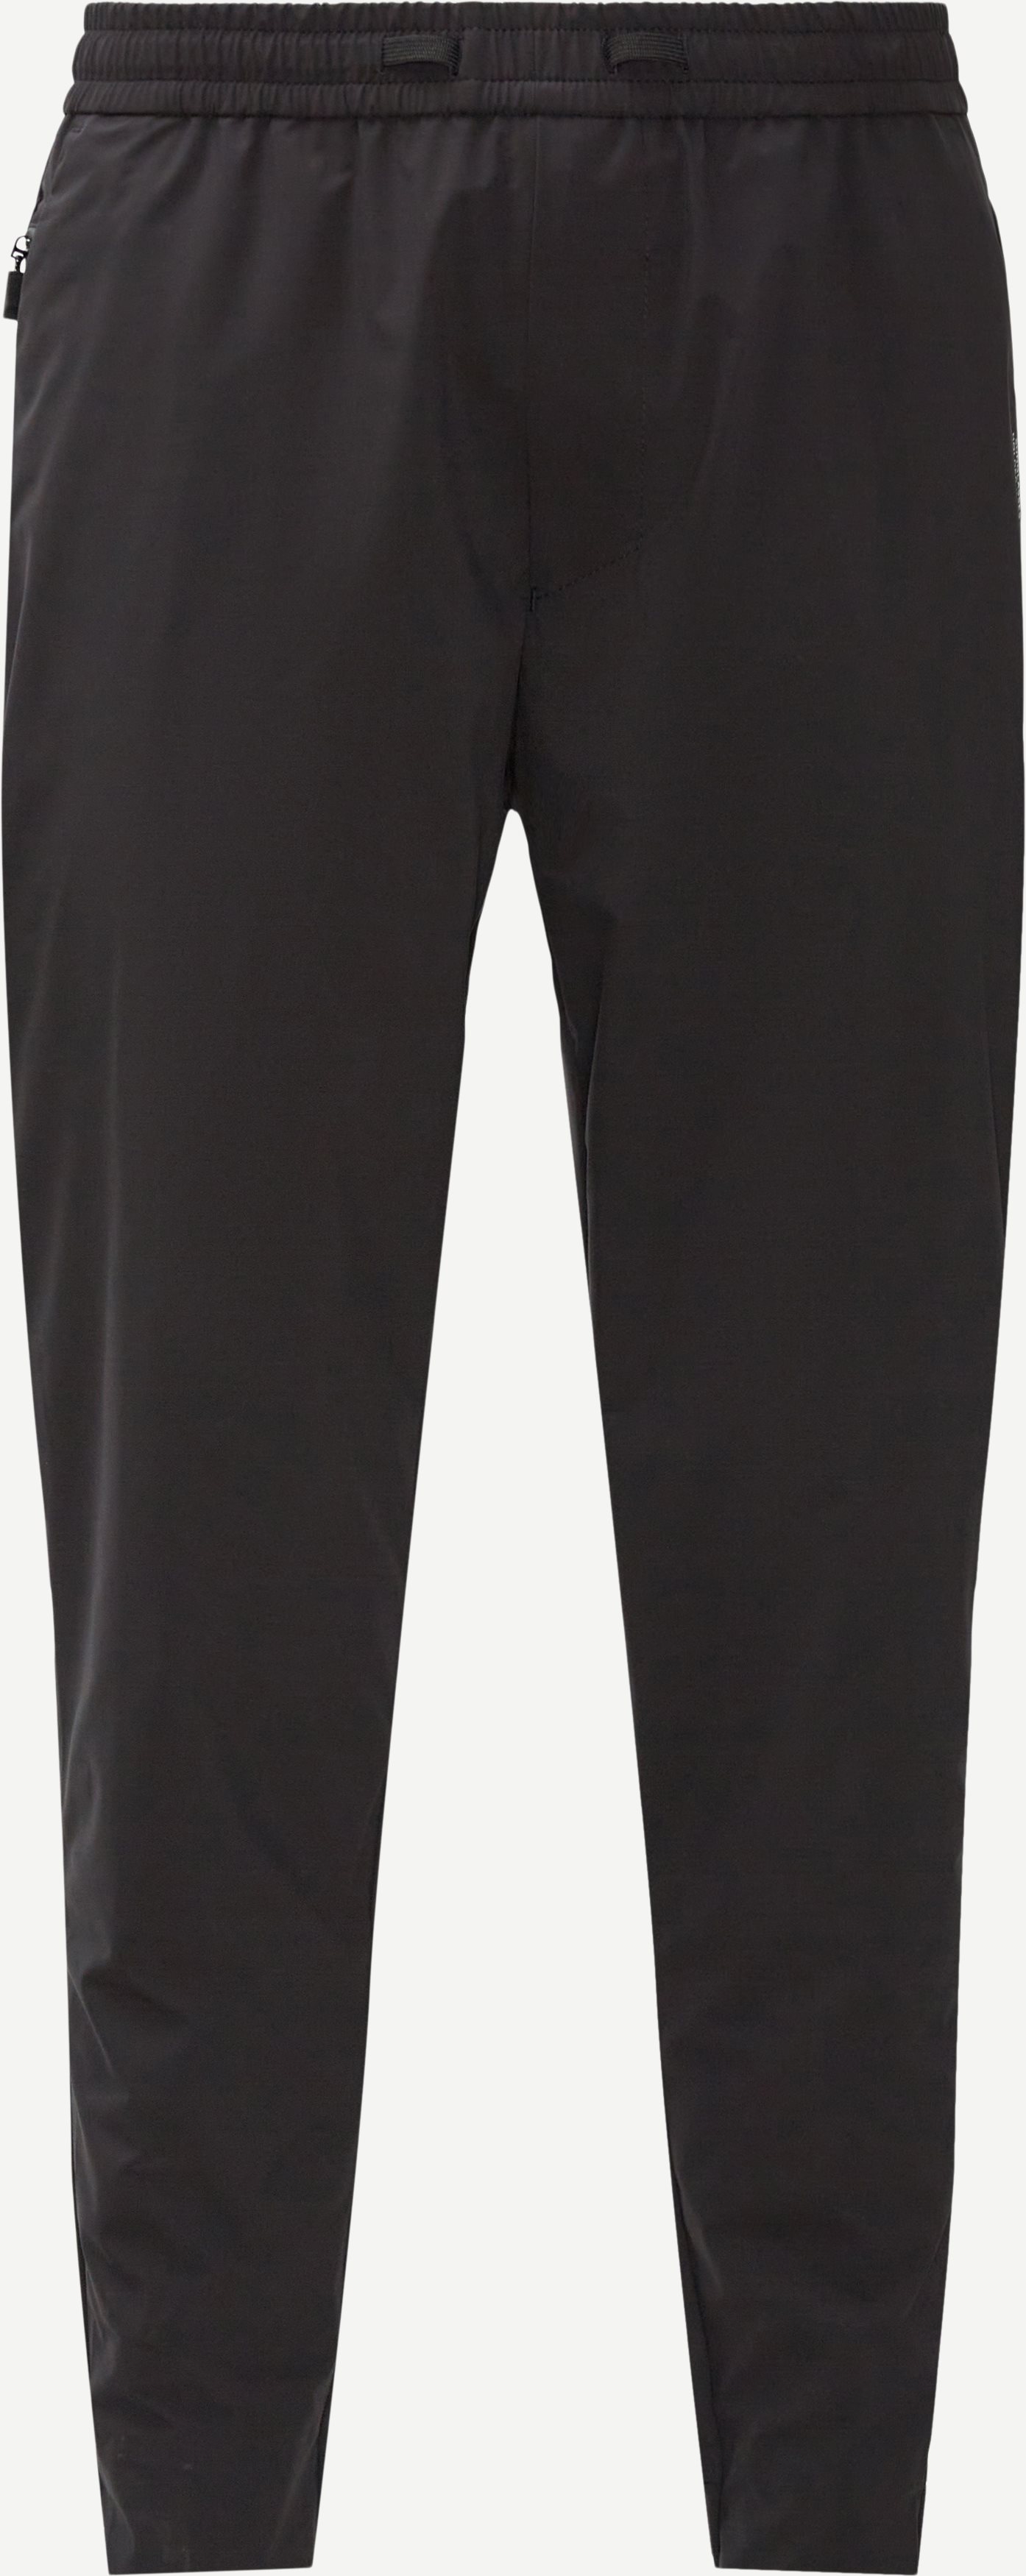 Shinobi Sweatpants - Bukser - Tapered fit - Sort